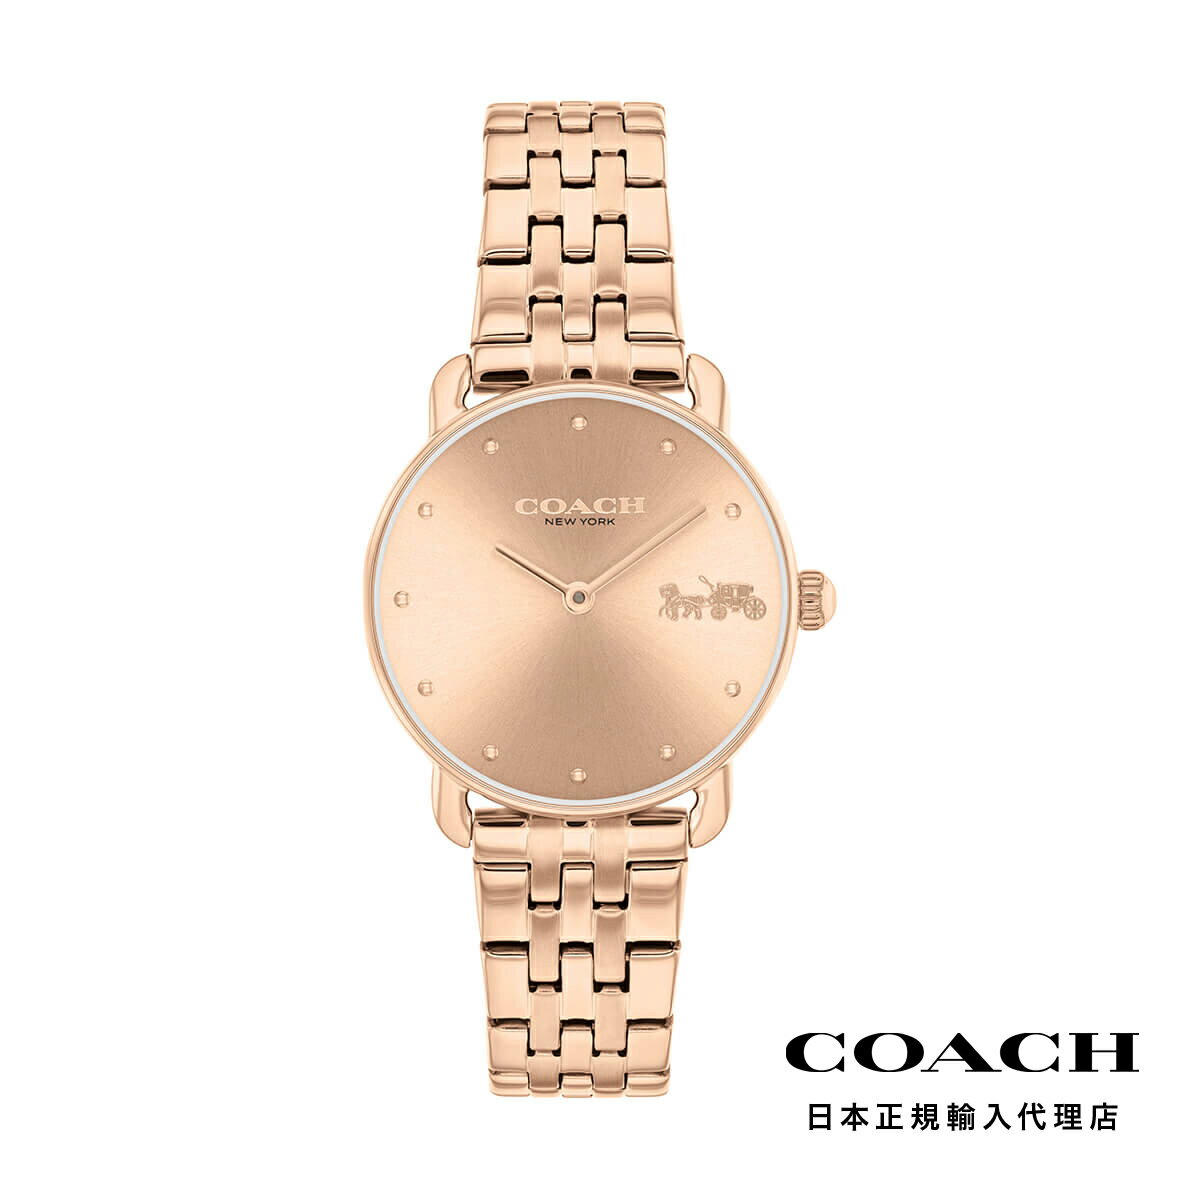 COACH コーチ 腕時計 レディース ブランド エリオット 28mm RG サンレイ ダイヤル ブレスレット